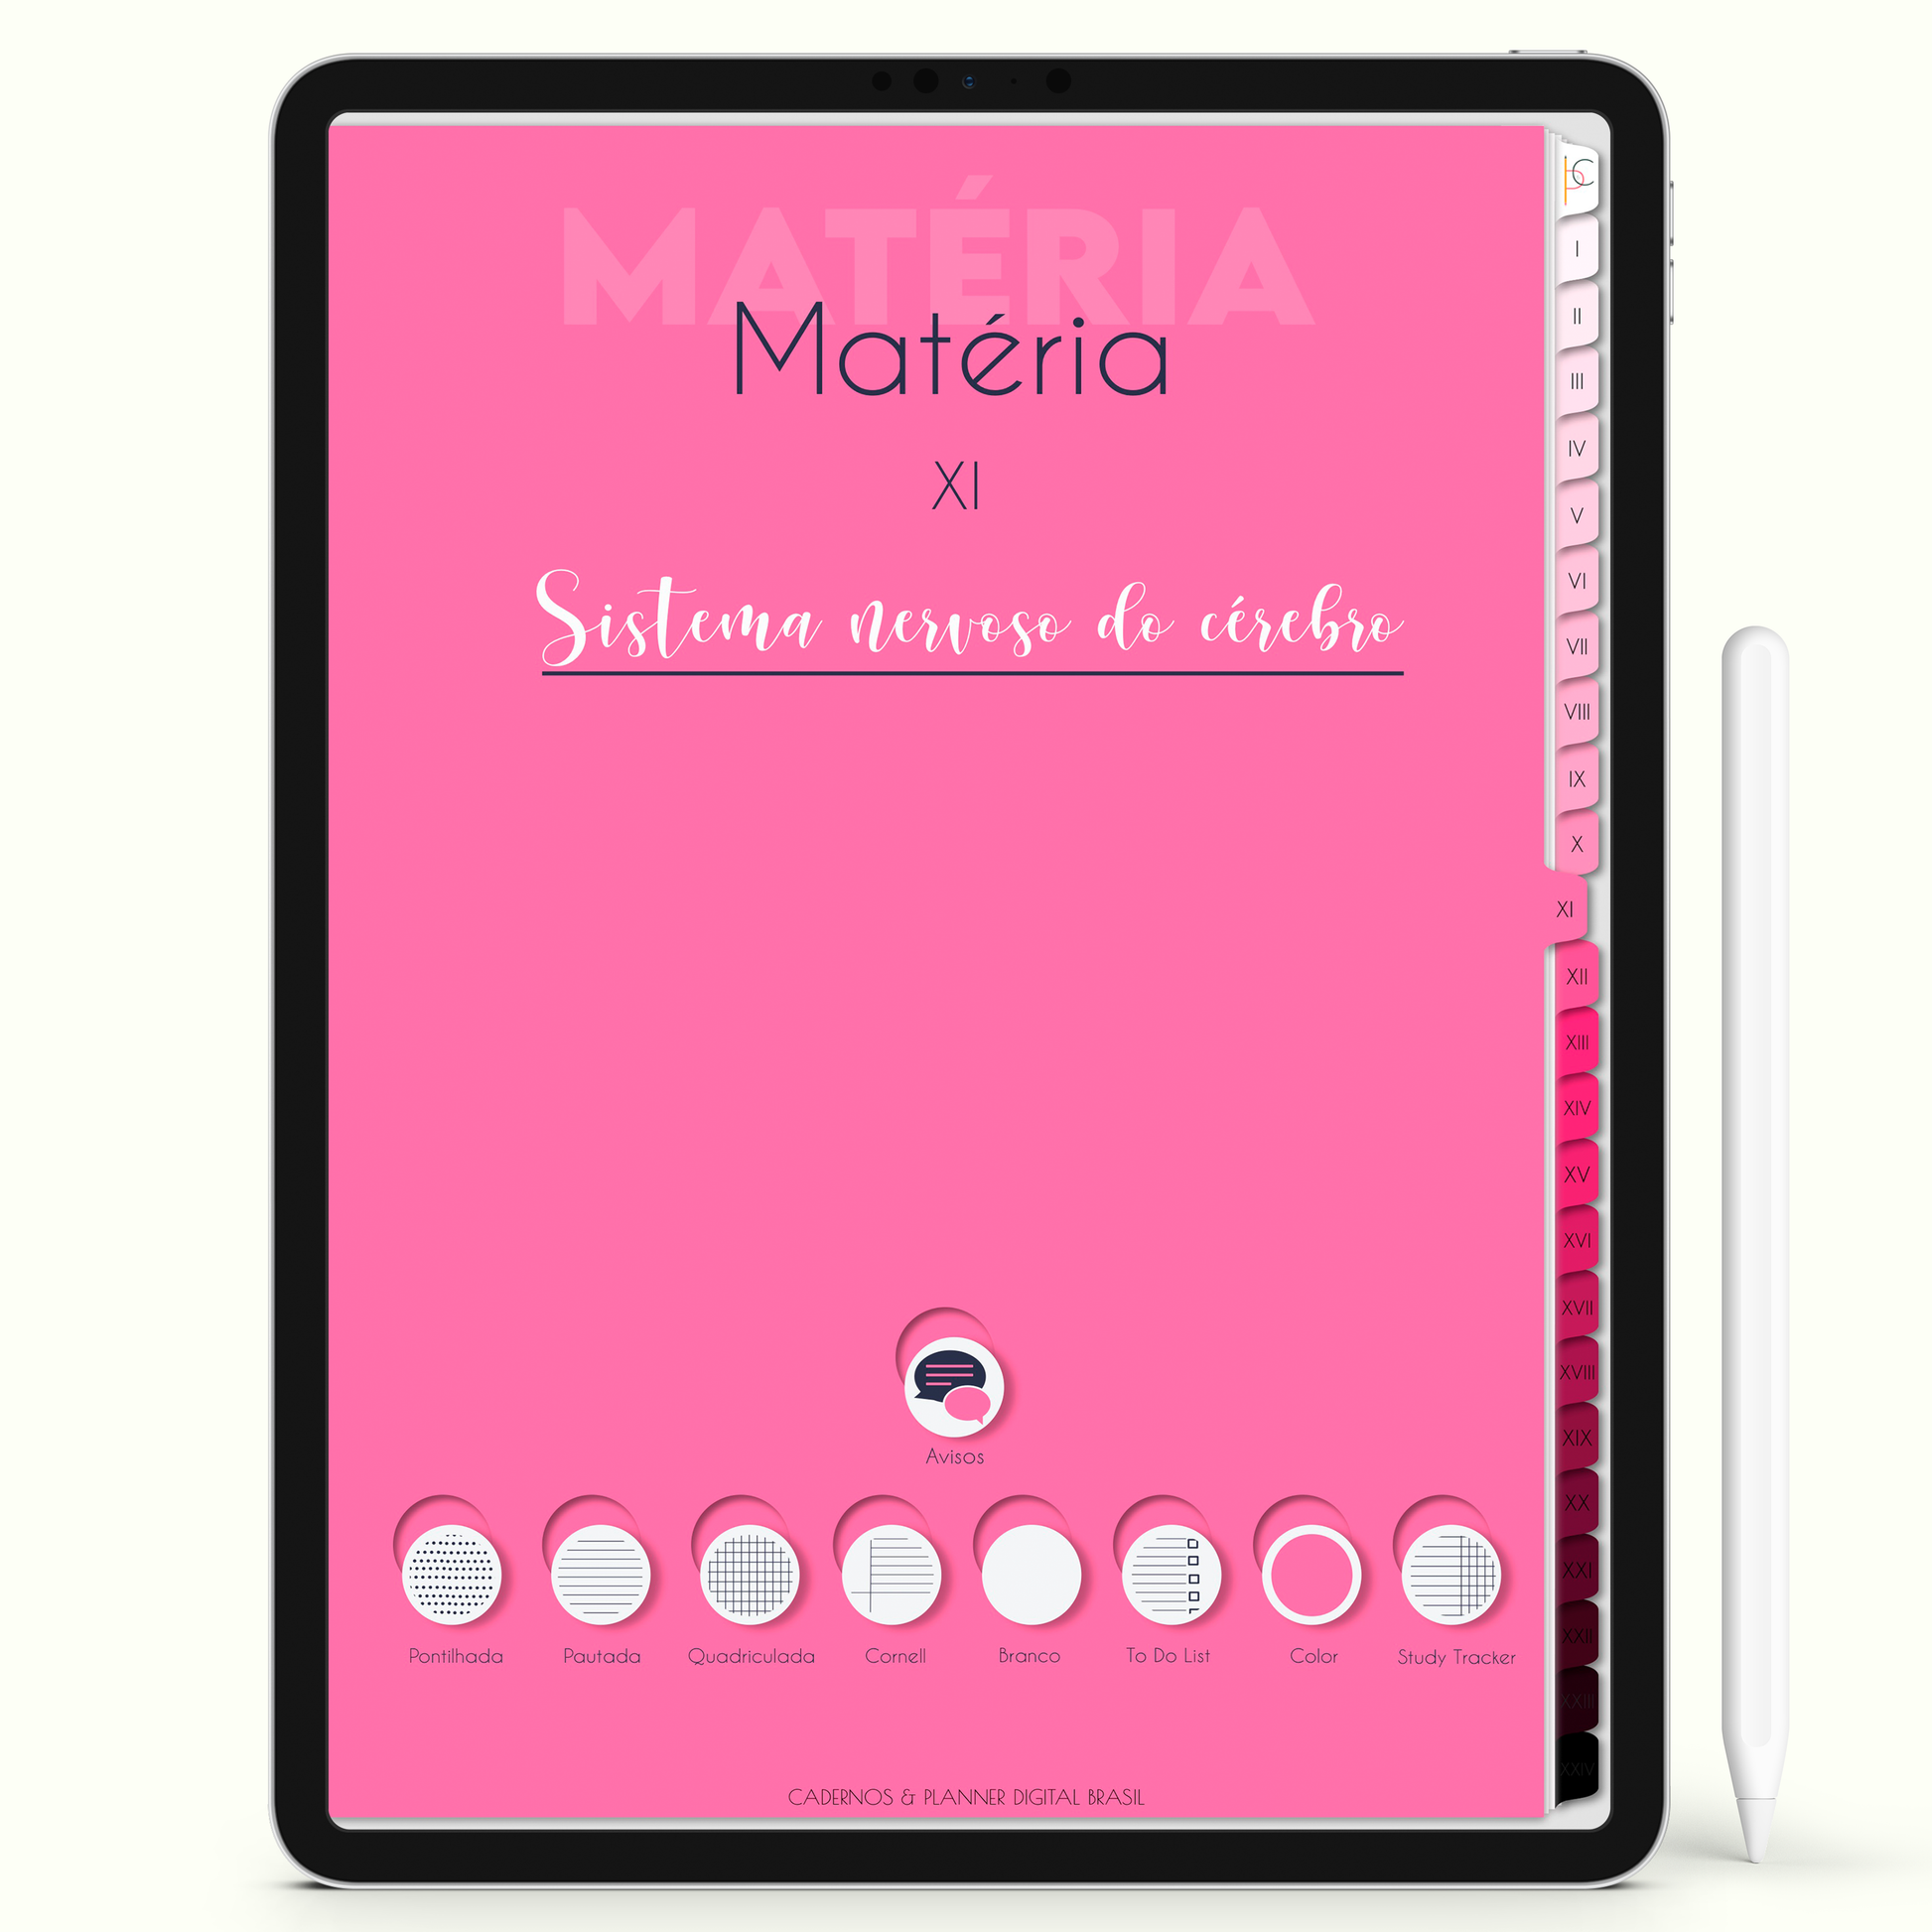 Caderno Digital Blush 24 Matérias - Capa da Matéria do Caderno para iPad e Tablet Android. Cadernos & Planner Digital Brasil